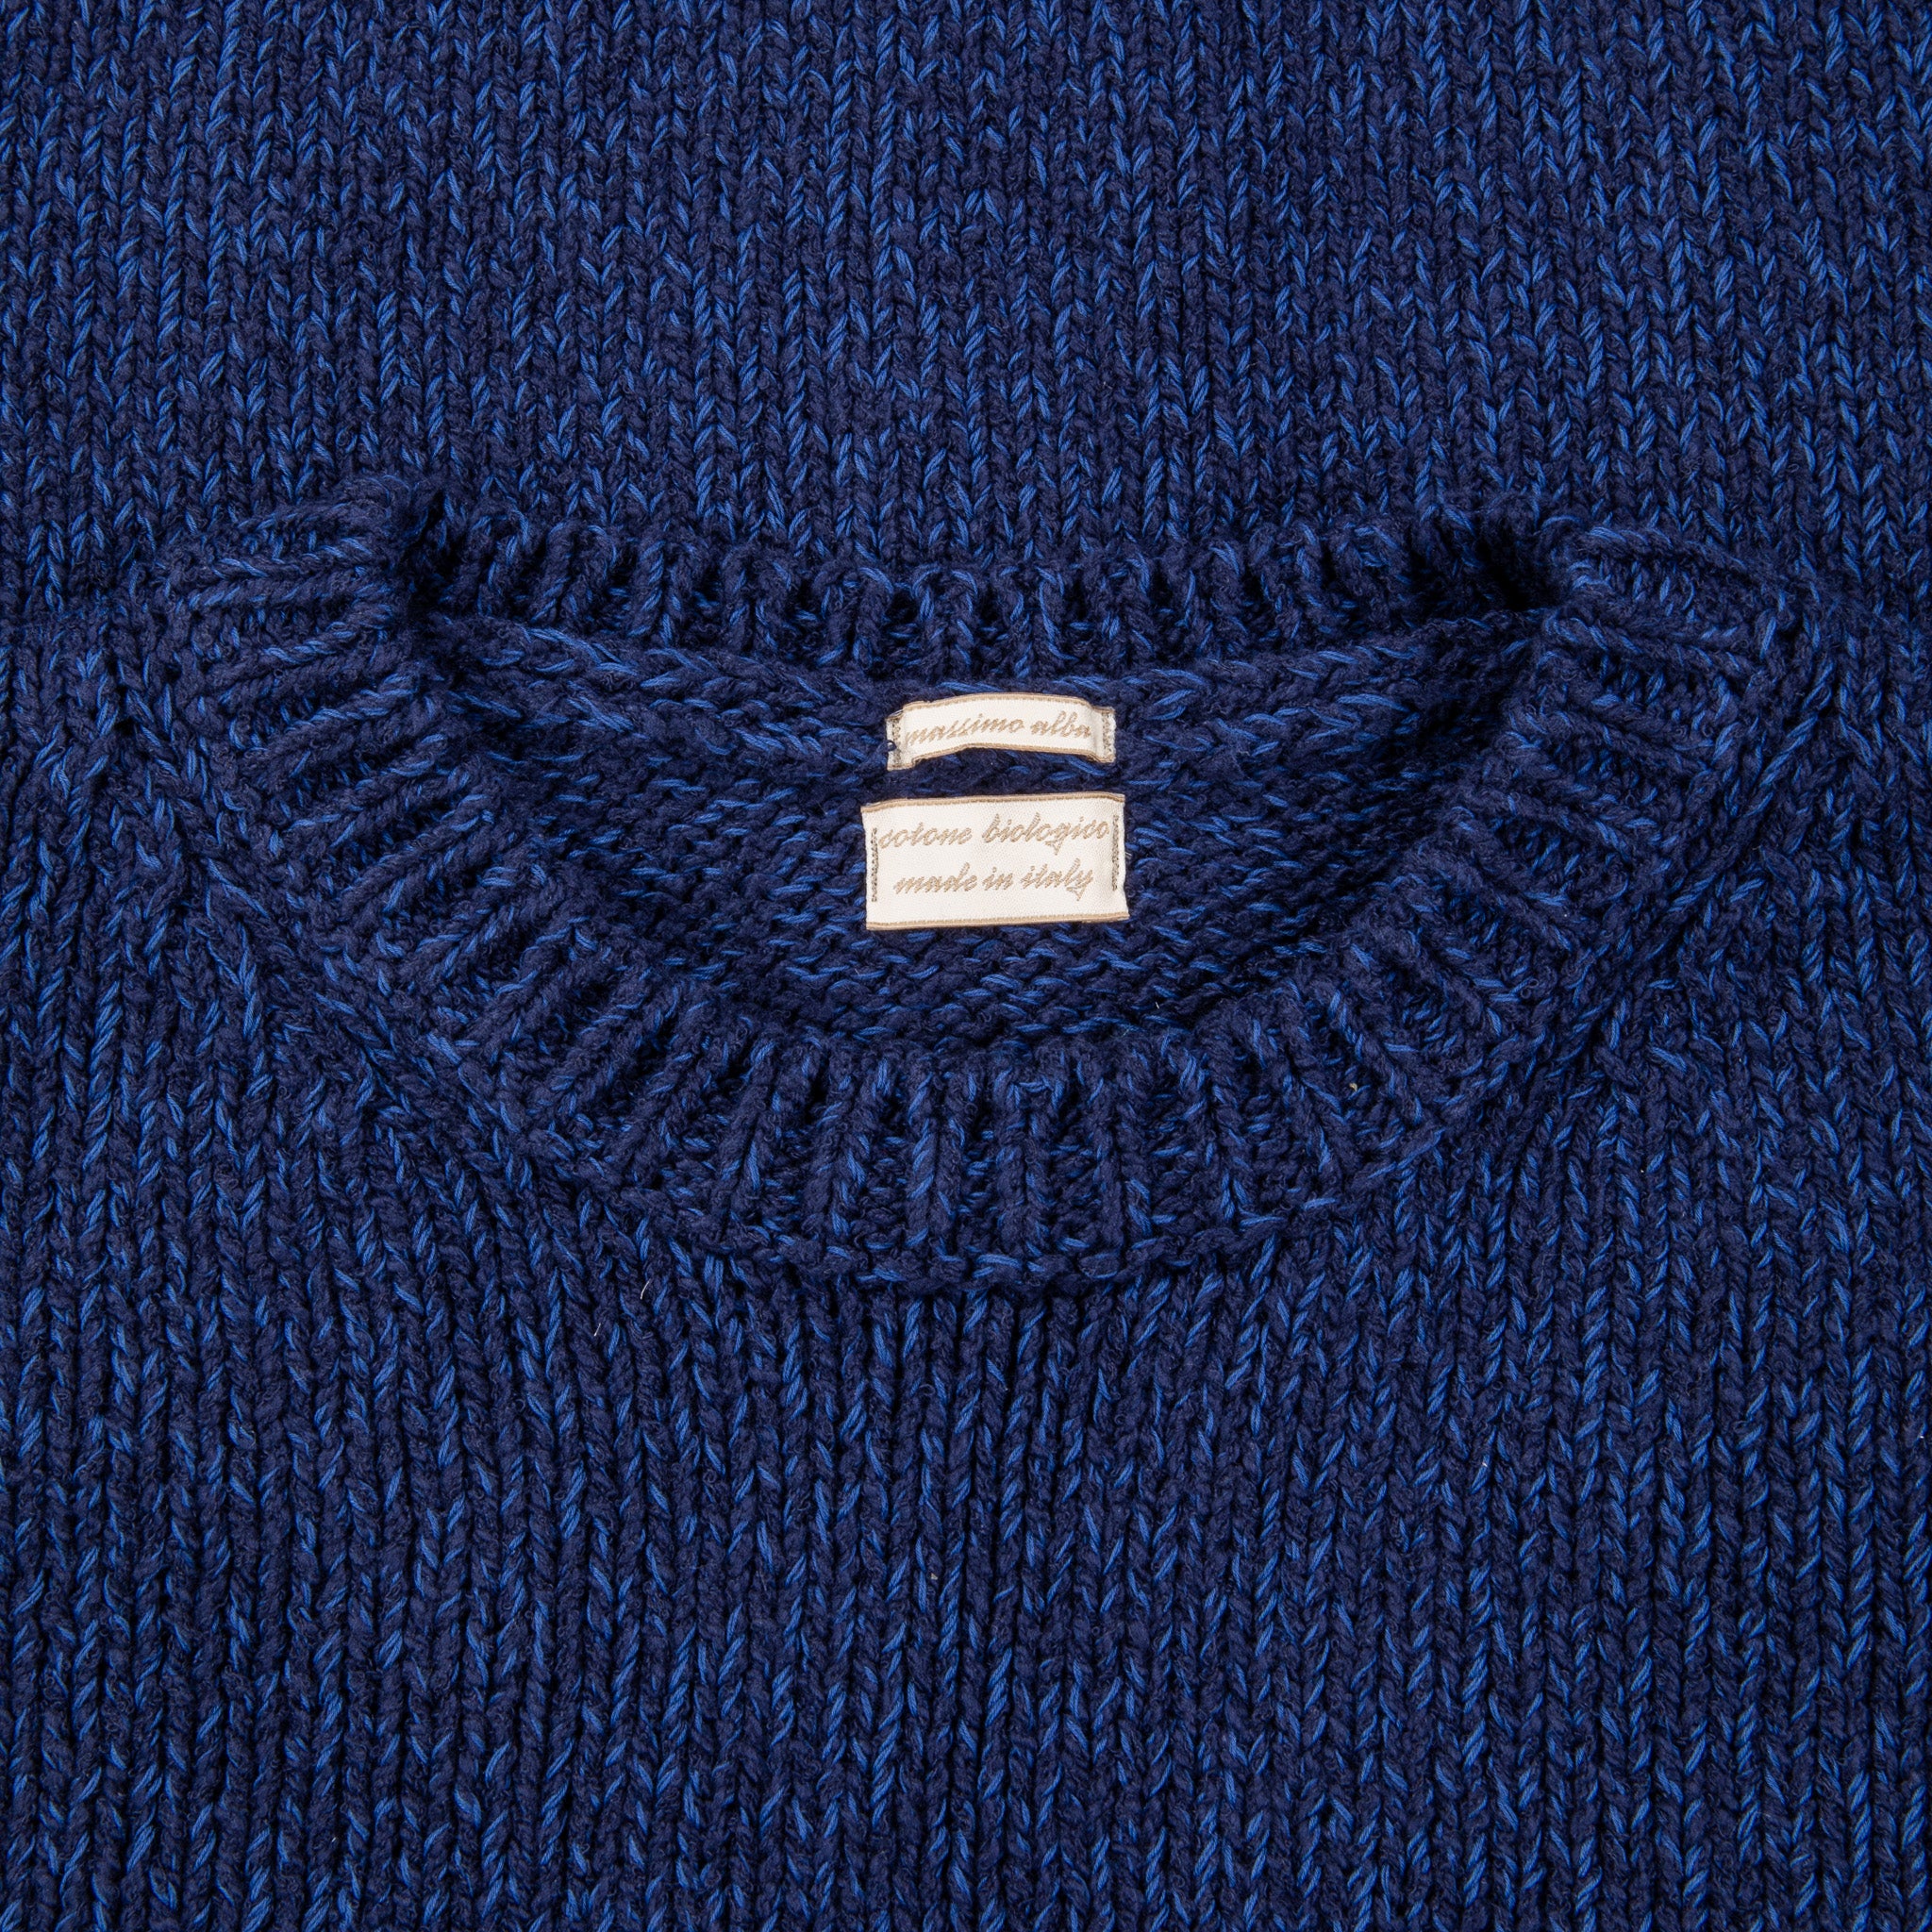 Massimo Alba Elia Sweater Blu